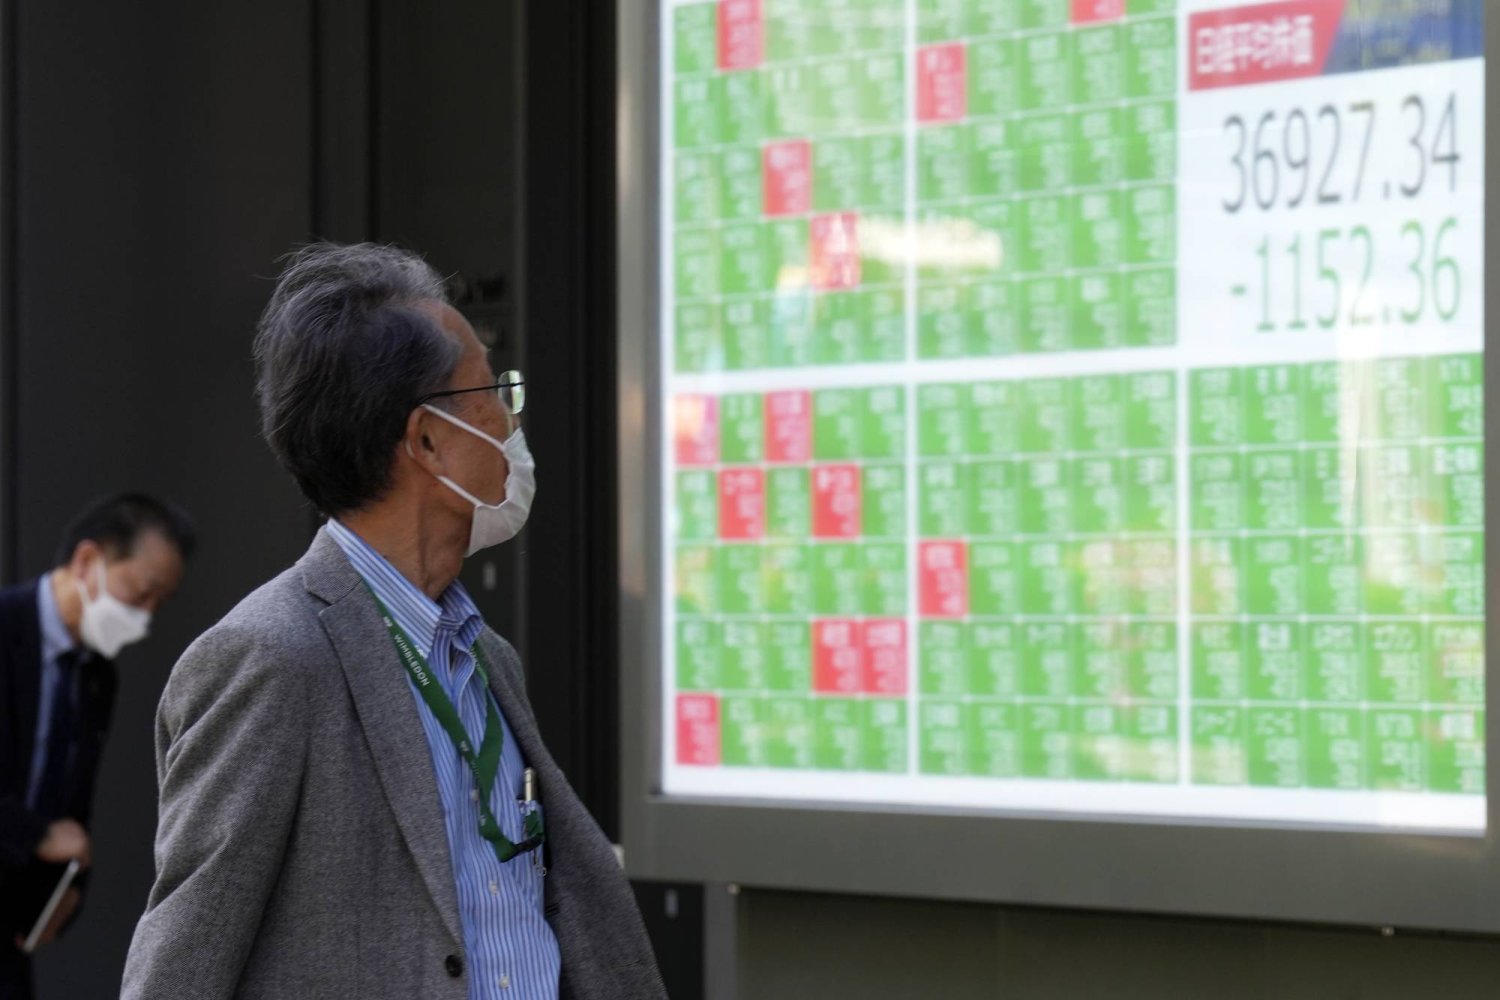 رجل يتابع حركة الأسهم على شاشة كبيرة في مركز للتداول وسط العاصمة اليابانية طوكيو (أ.ب)